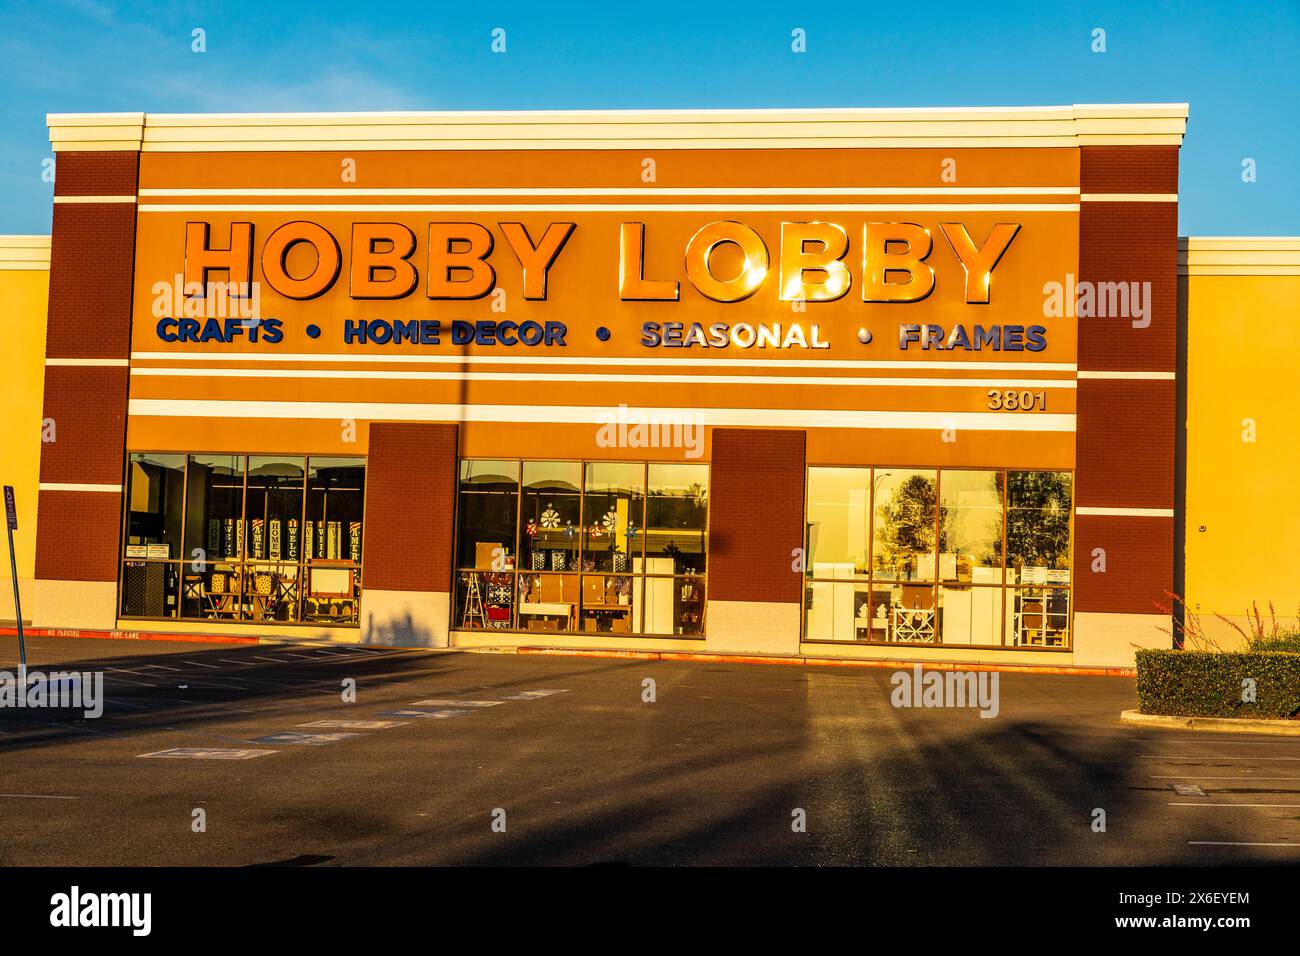 Ein Hobby-Lobbygeschäft in der kalifornischen Stadt Turlock im Central Valley Stockfoto